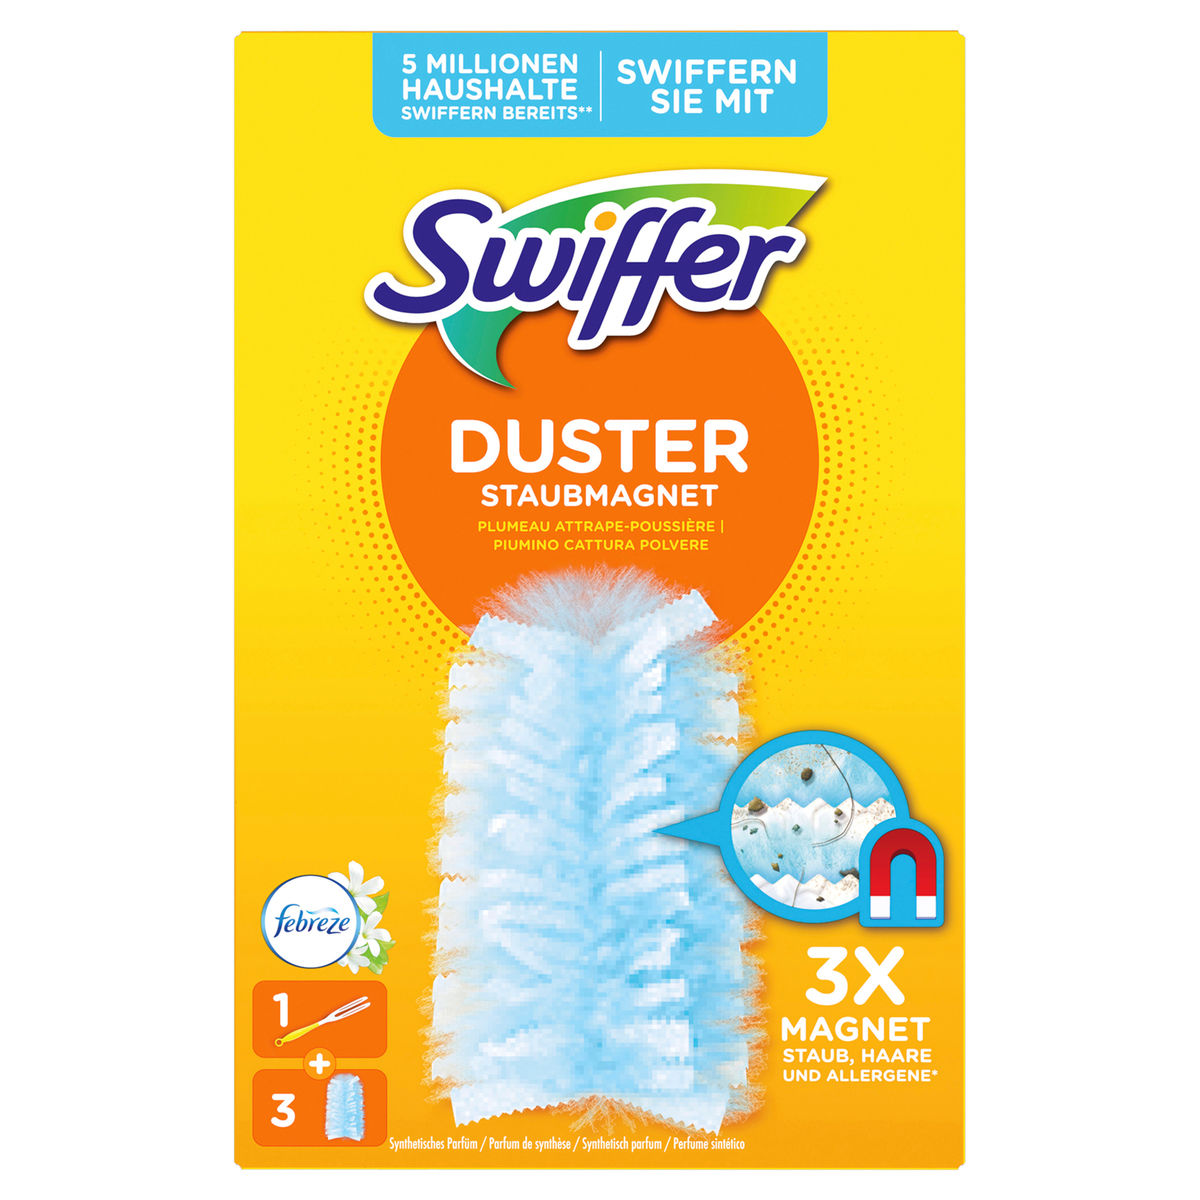 Swiffer Duster plumeau kit de démarrage et recharges